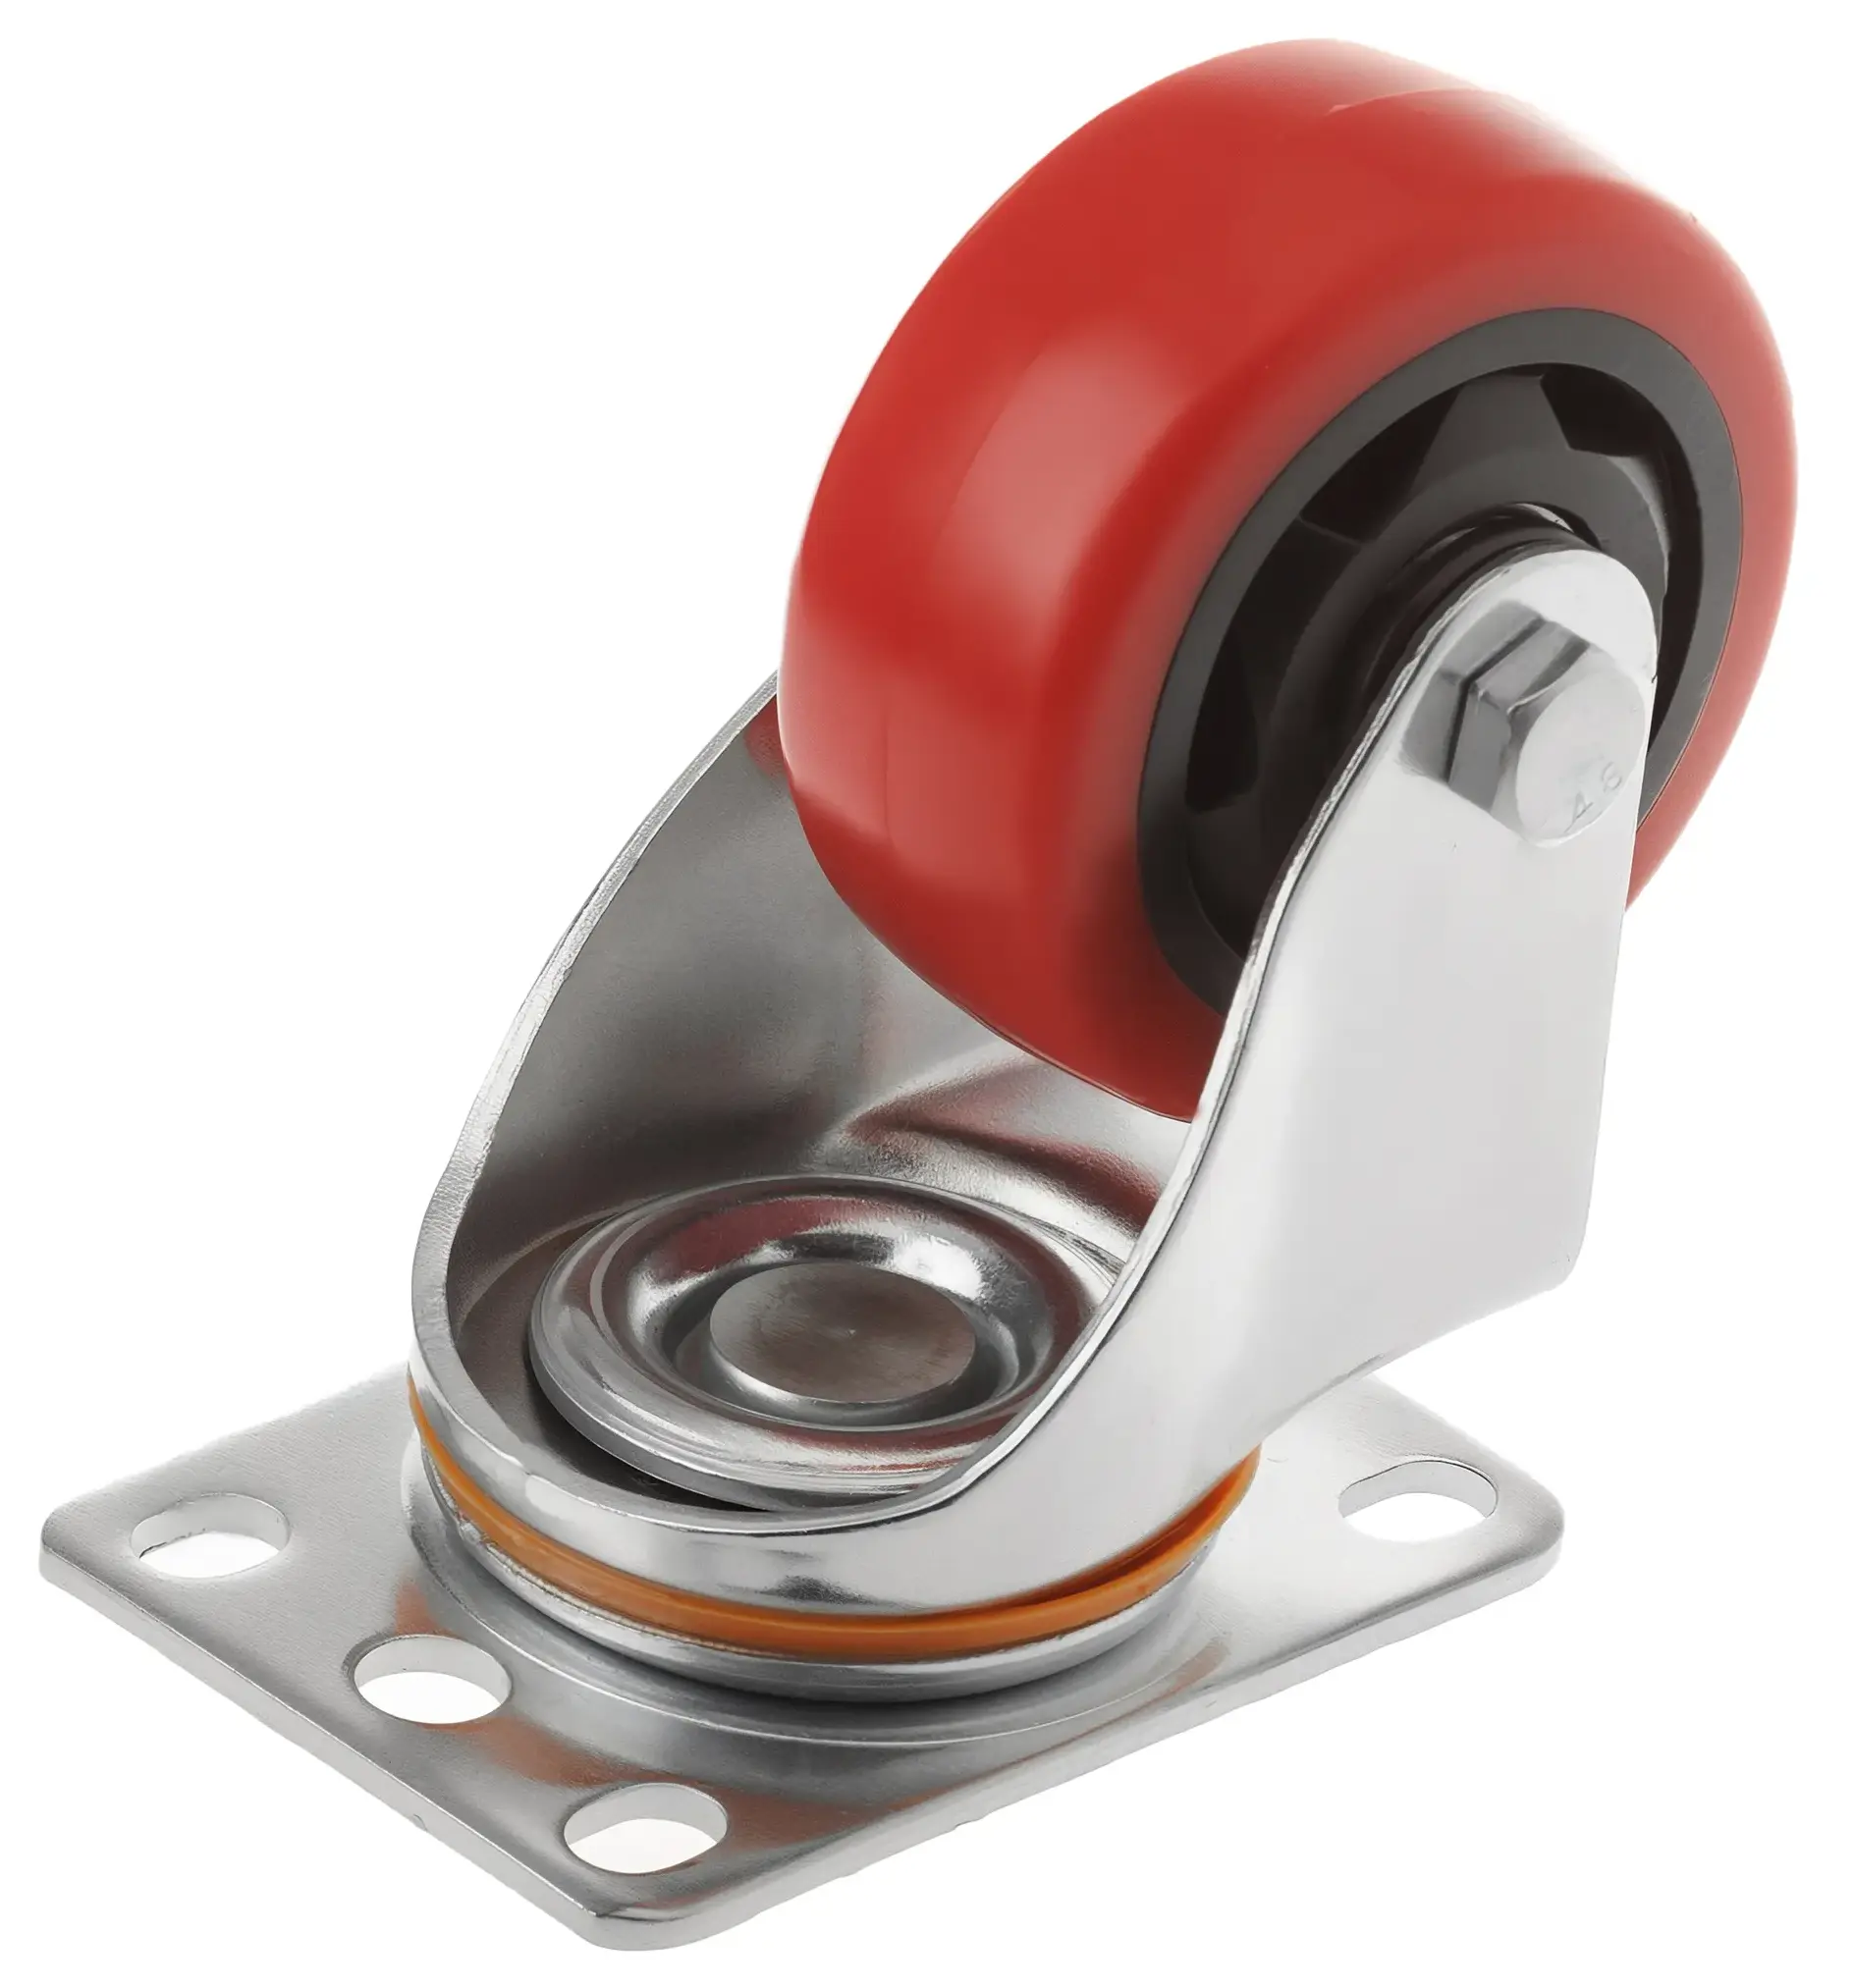 Полиуретановое красное колесо 75 мм (поворотная площадка, двойной шарикоподшипник) - 33075S